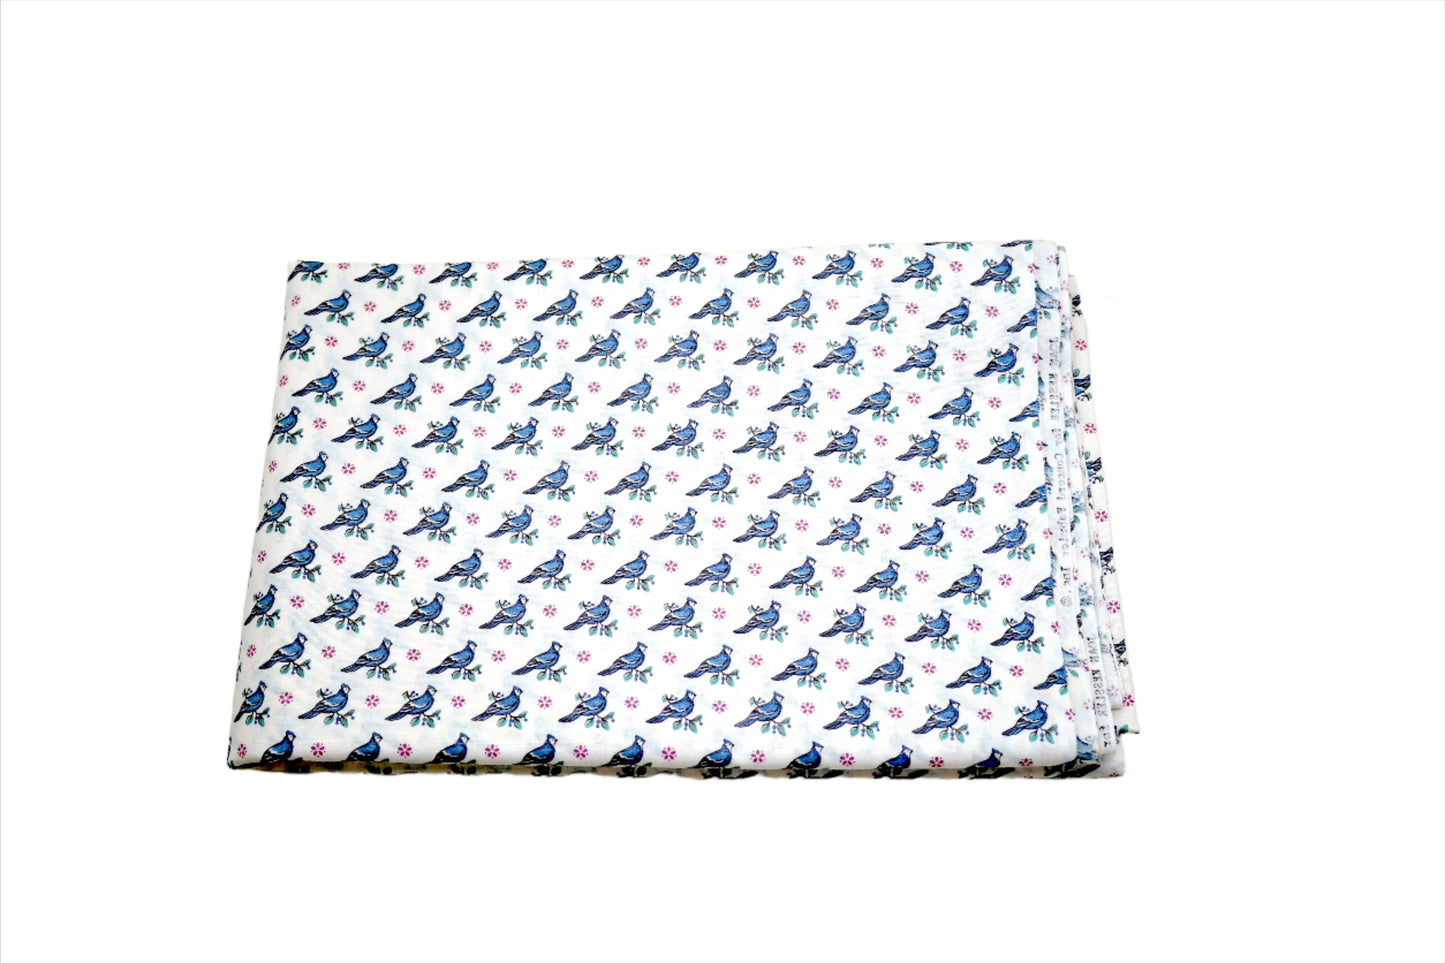 Blue Cardinal Cotton Fabric 44" x 2.25 yds